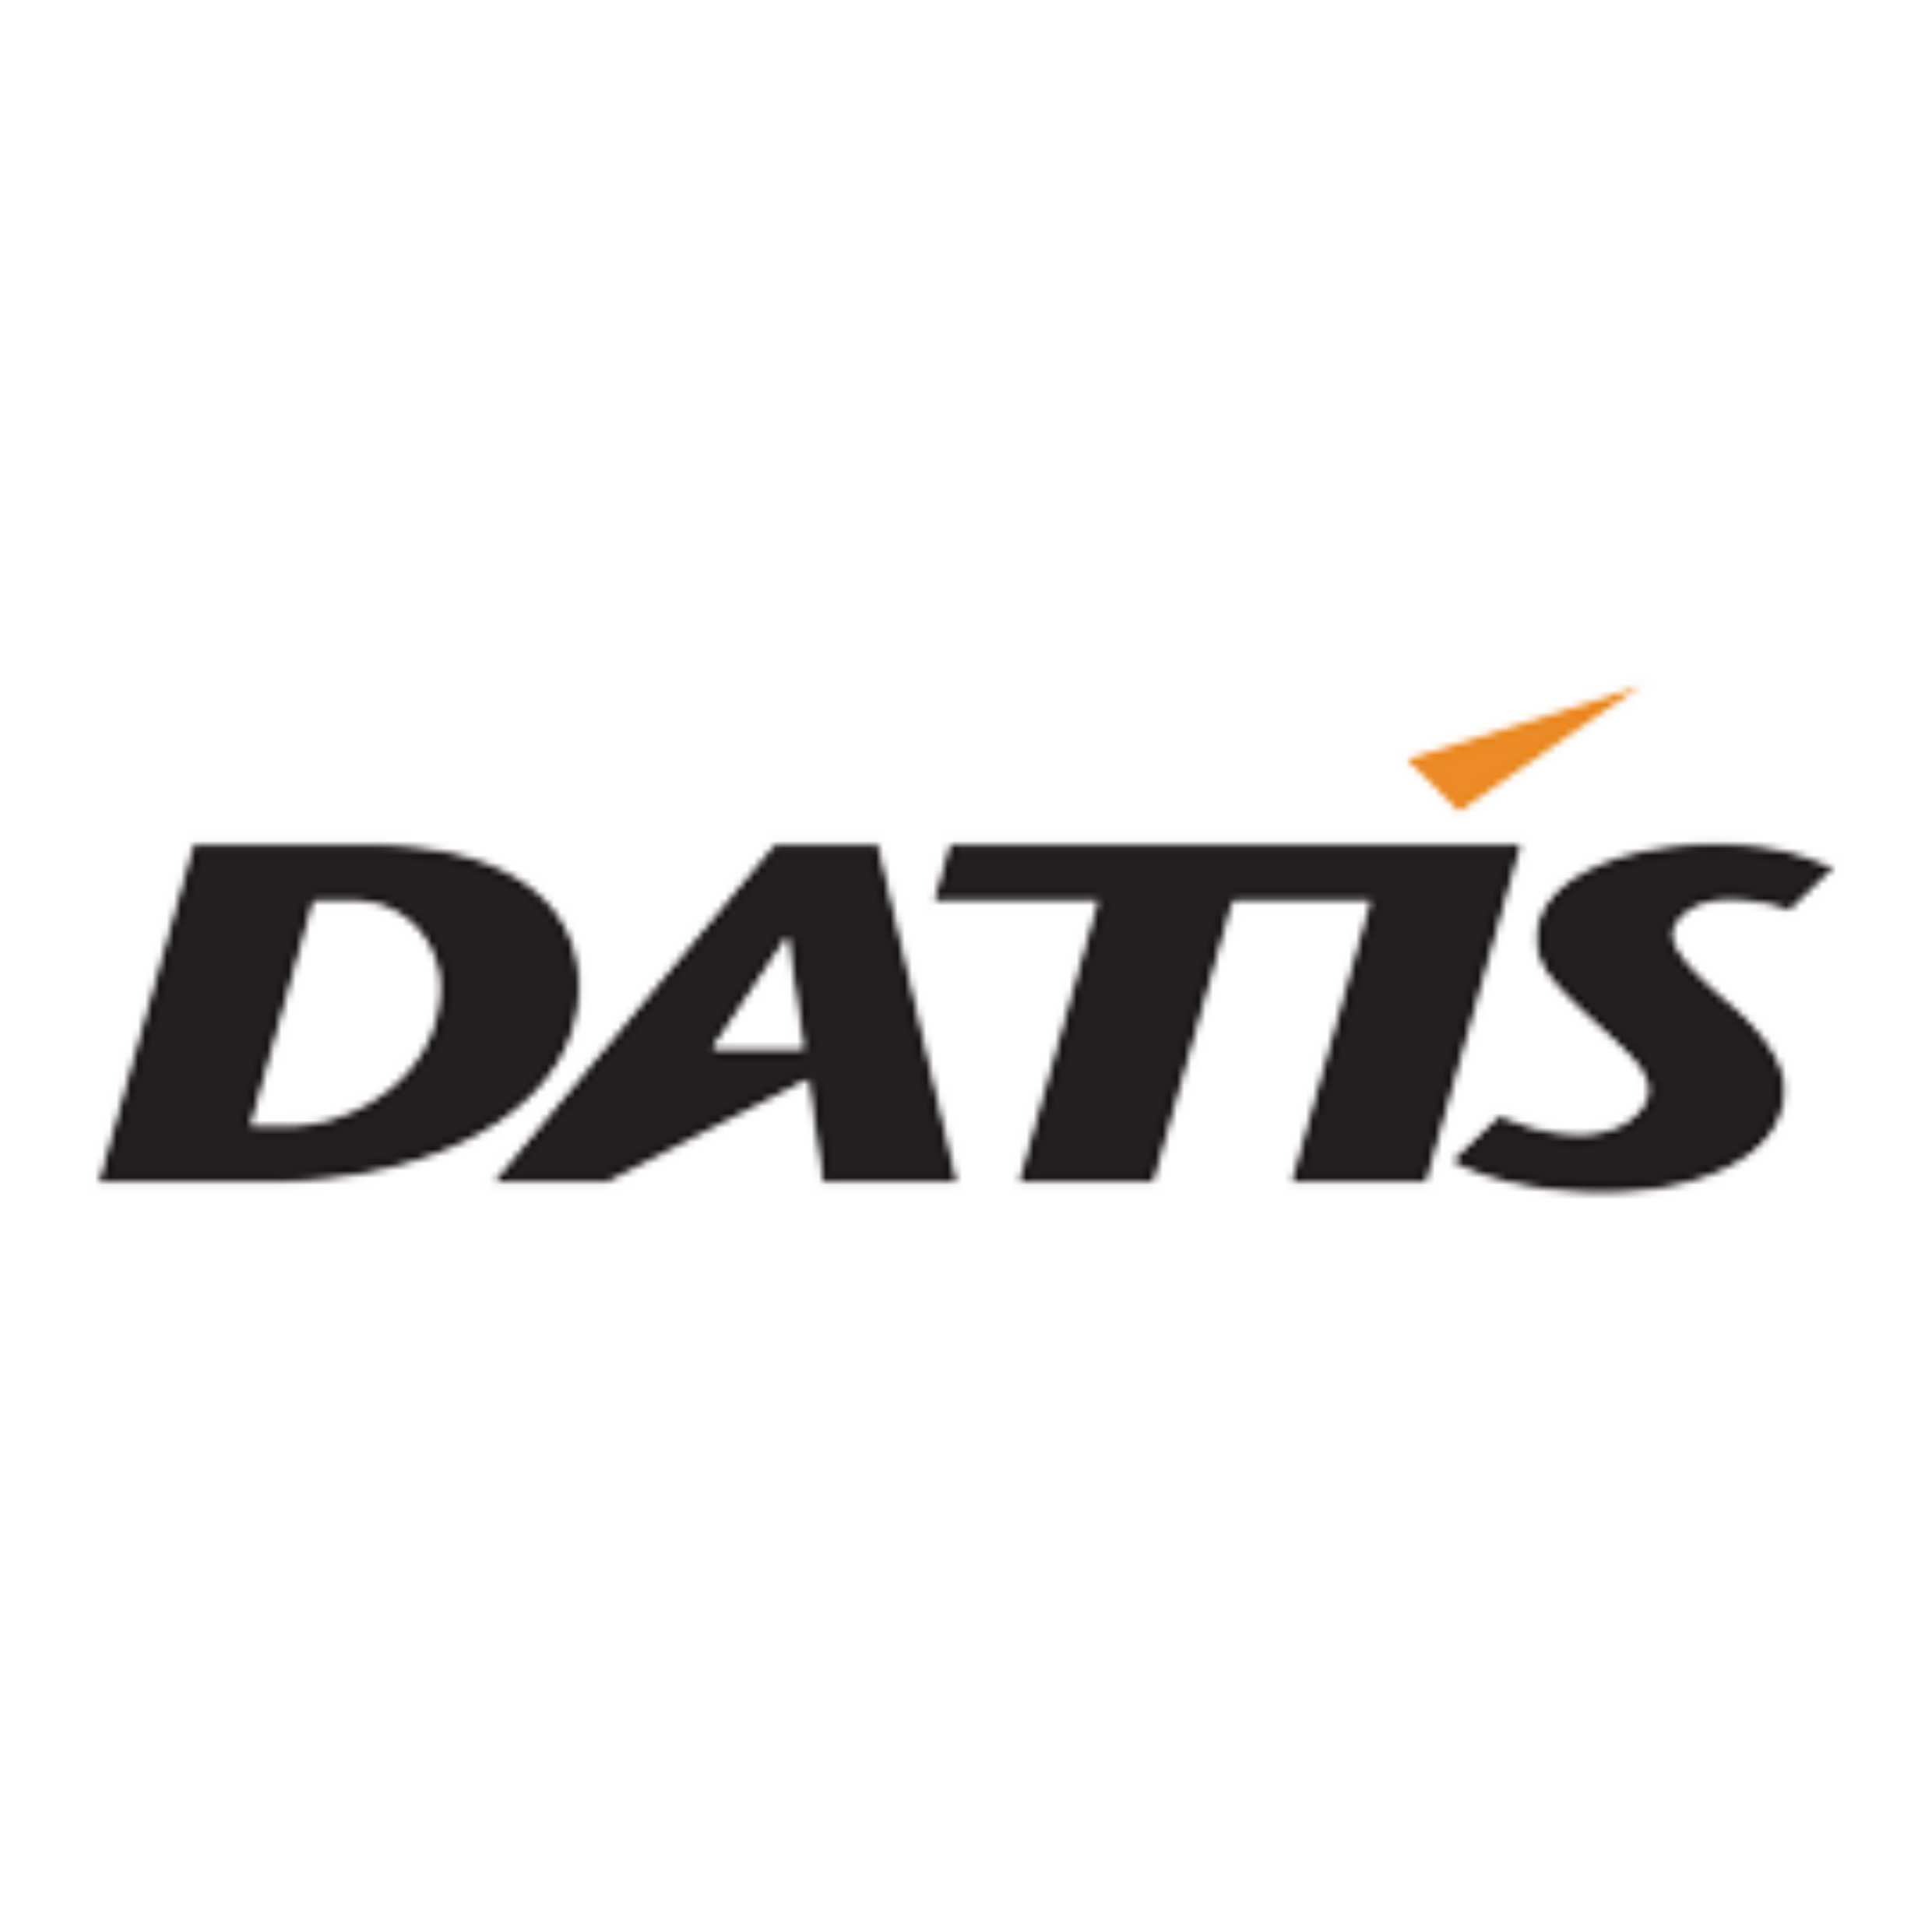 داتیس | Datis